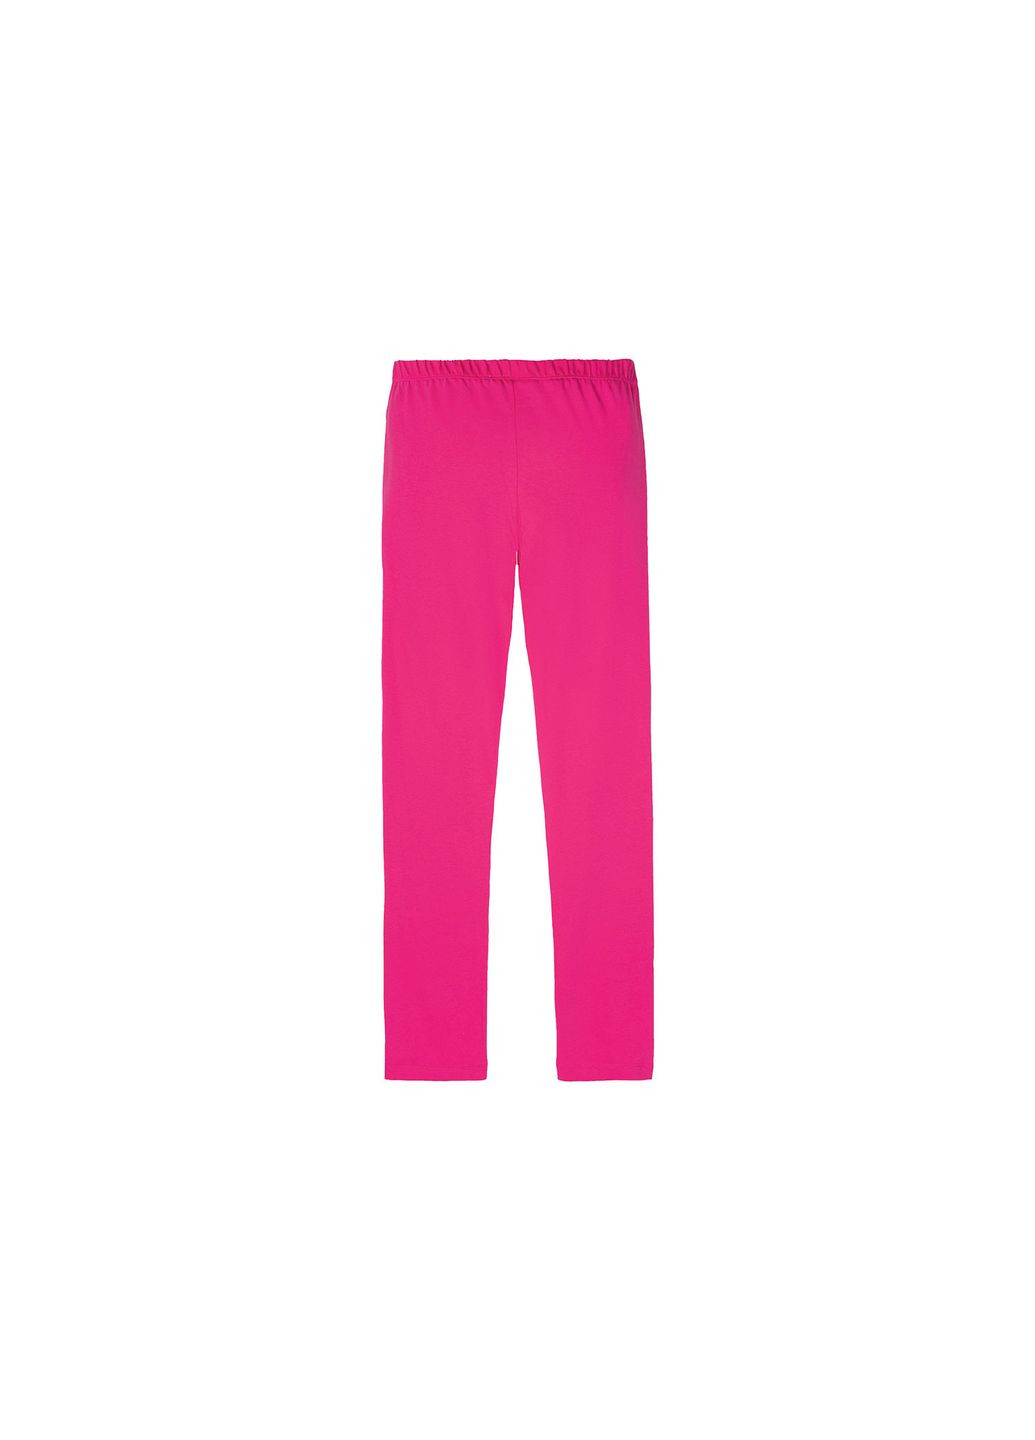 Розовая пижама (футболка и штаны) для девочки lego 394525 Disney